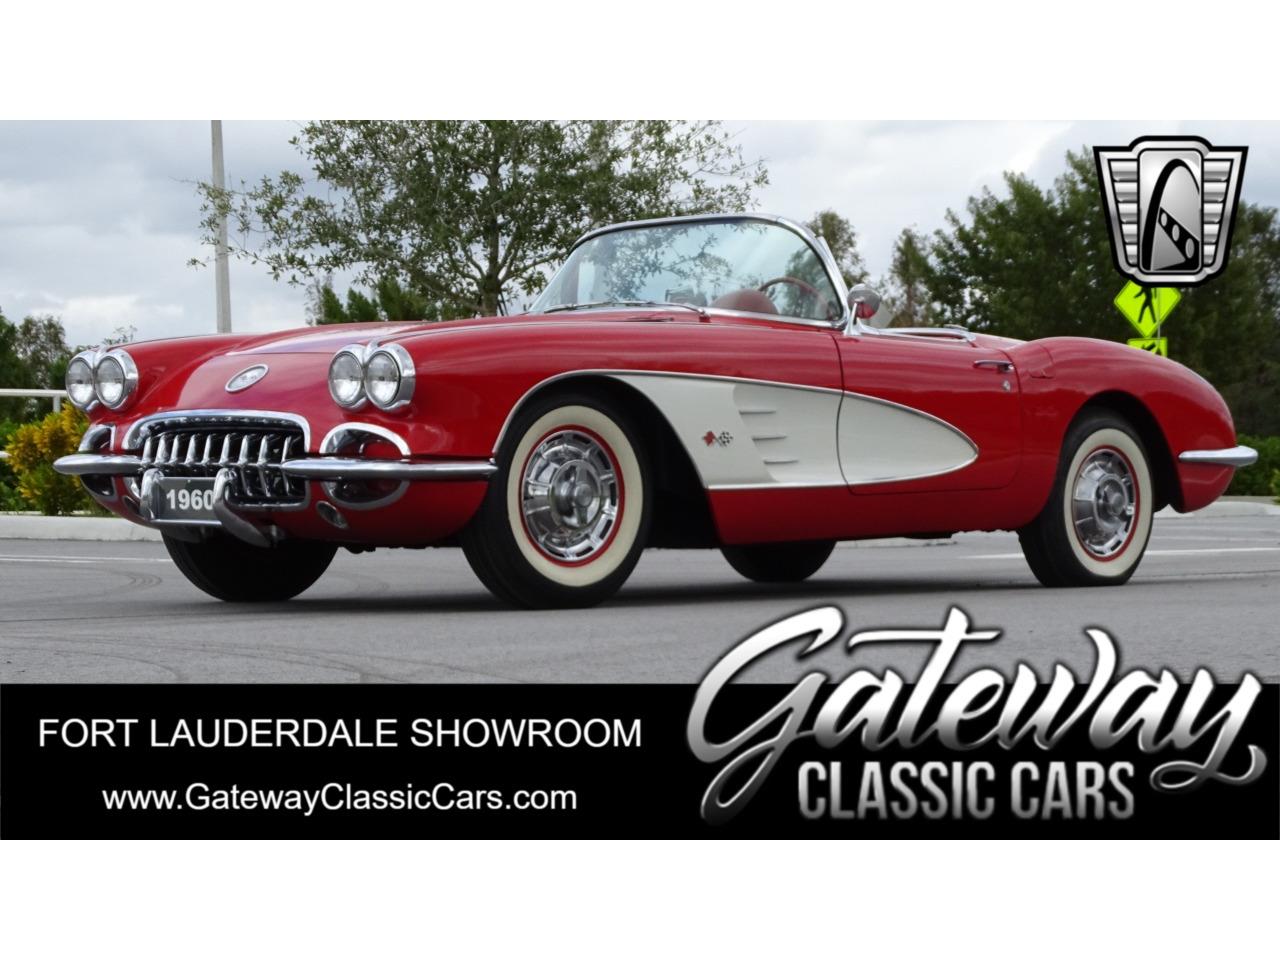 For Sale: 1960 Chevrolet Corvette in O'Fallon, Illinois for sale in O Fallon, IL